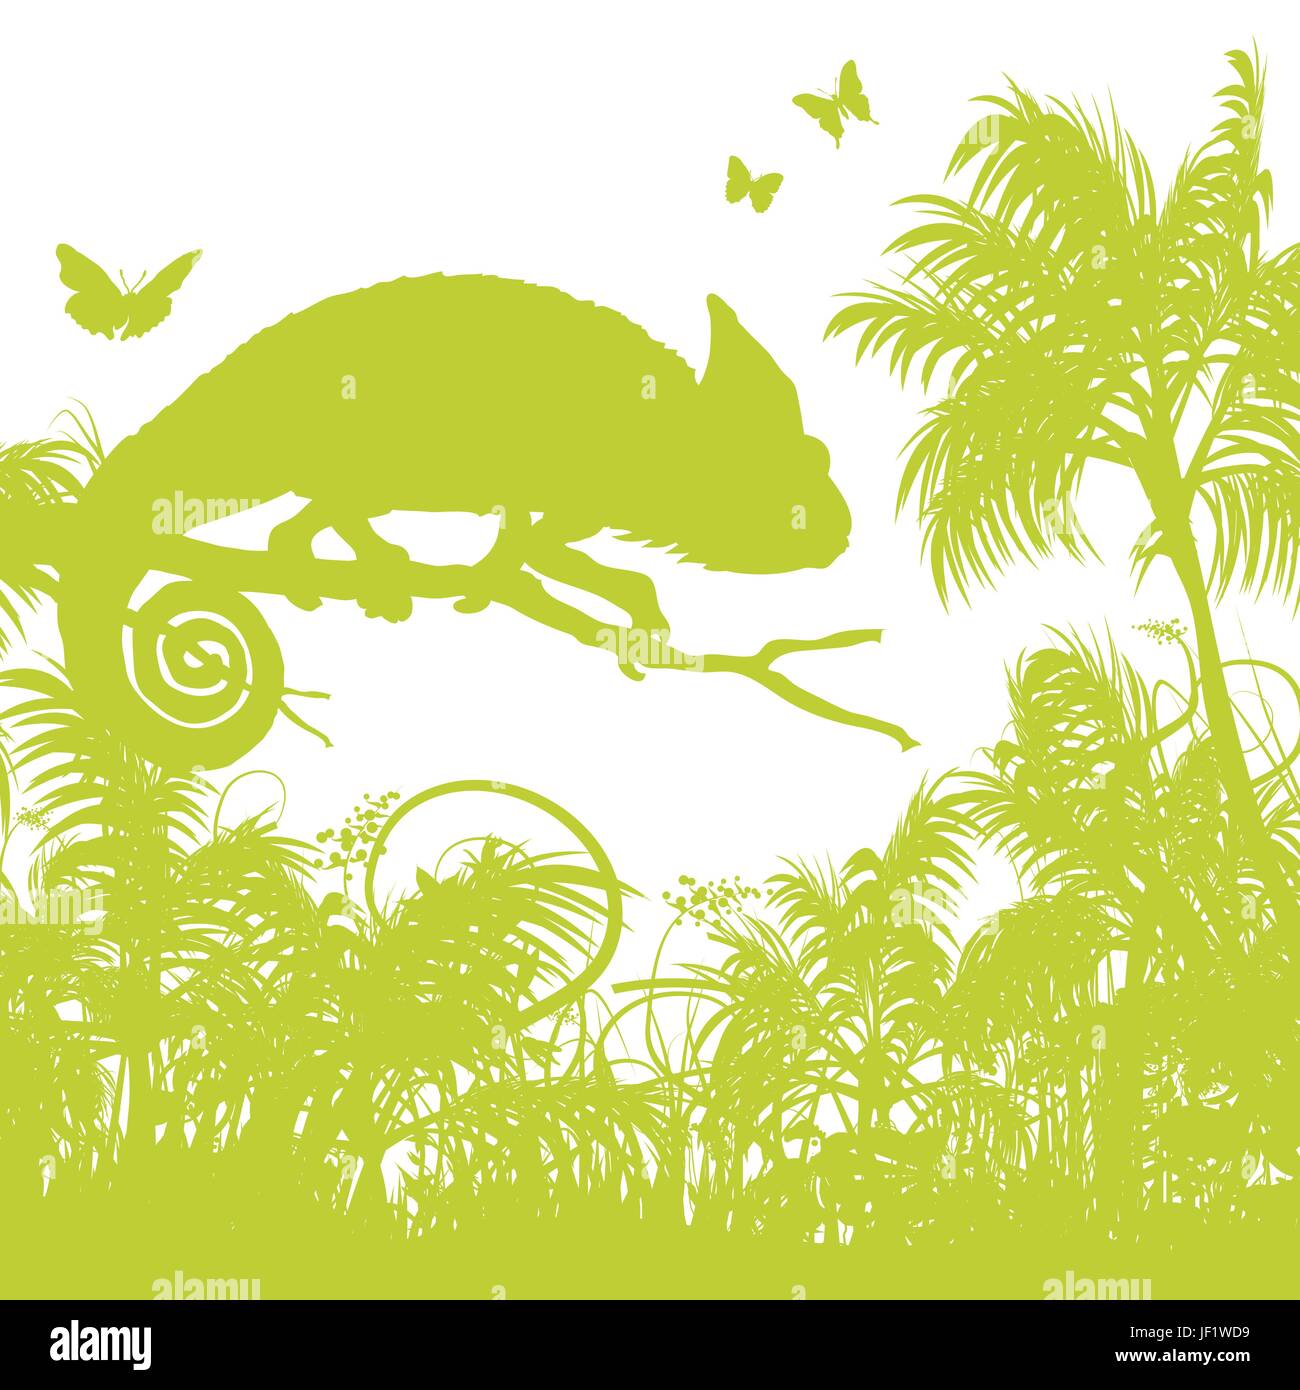 Brins d'herbe avec chameleon Illustration de Vecteur